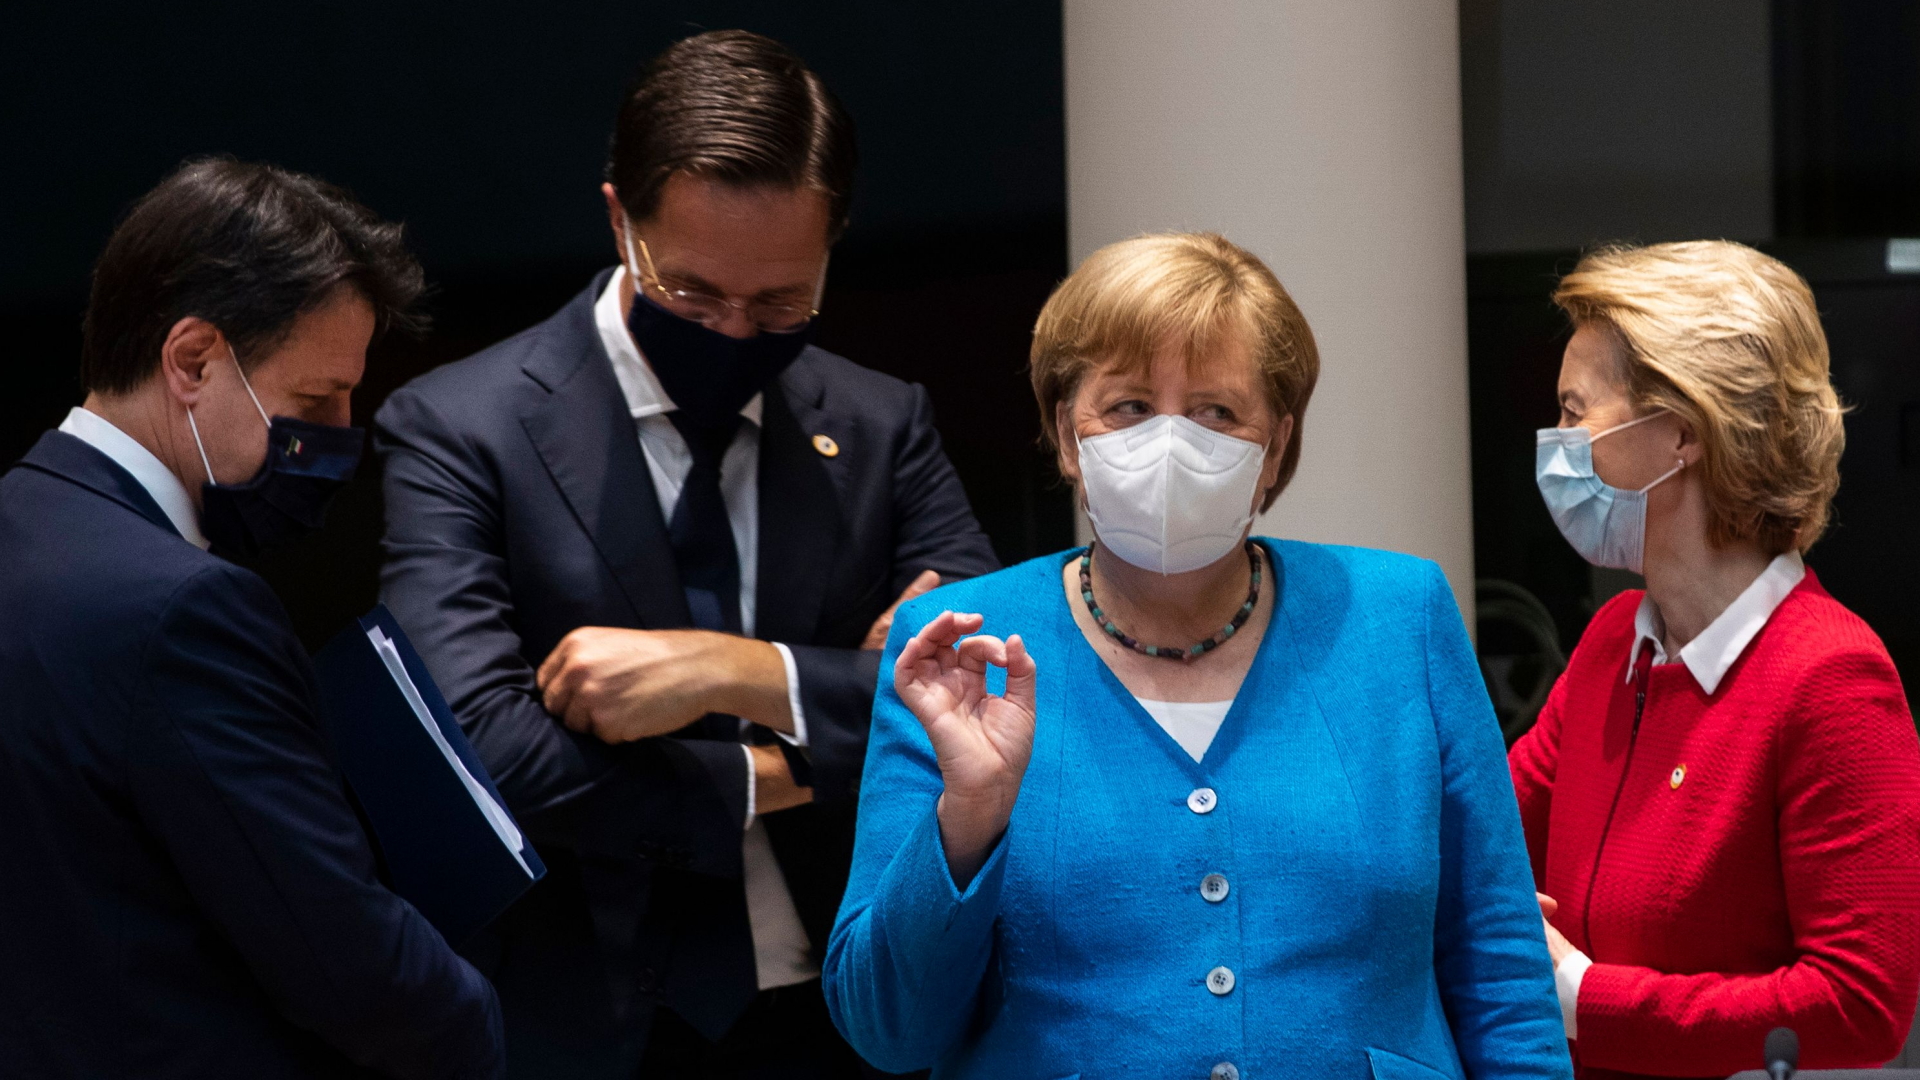 Giuseppe Conte, Mark Rutte, Angela Merkel und Ursula von der Leyen beim EU-Gipfel. | AFP